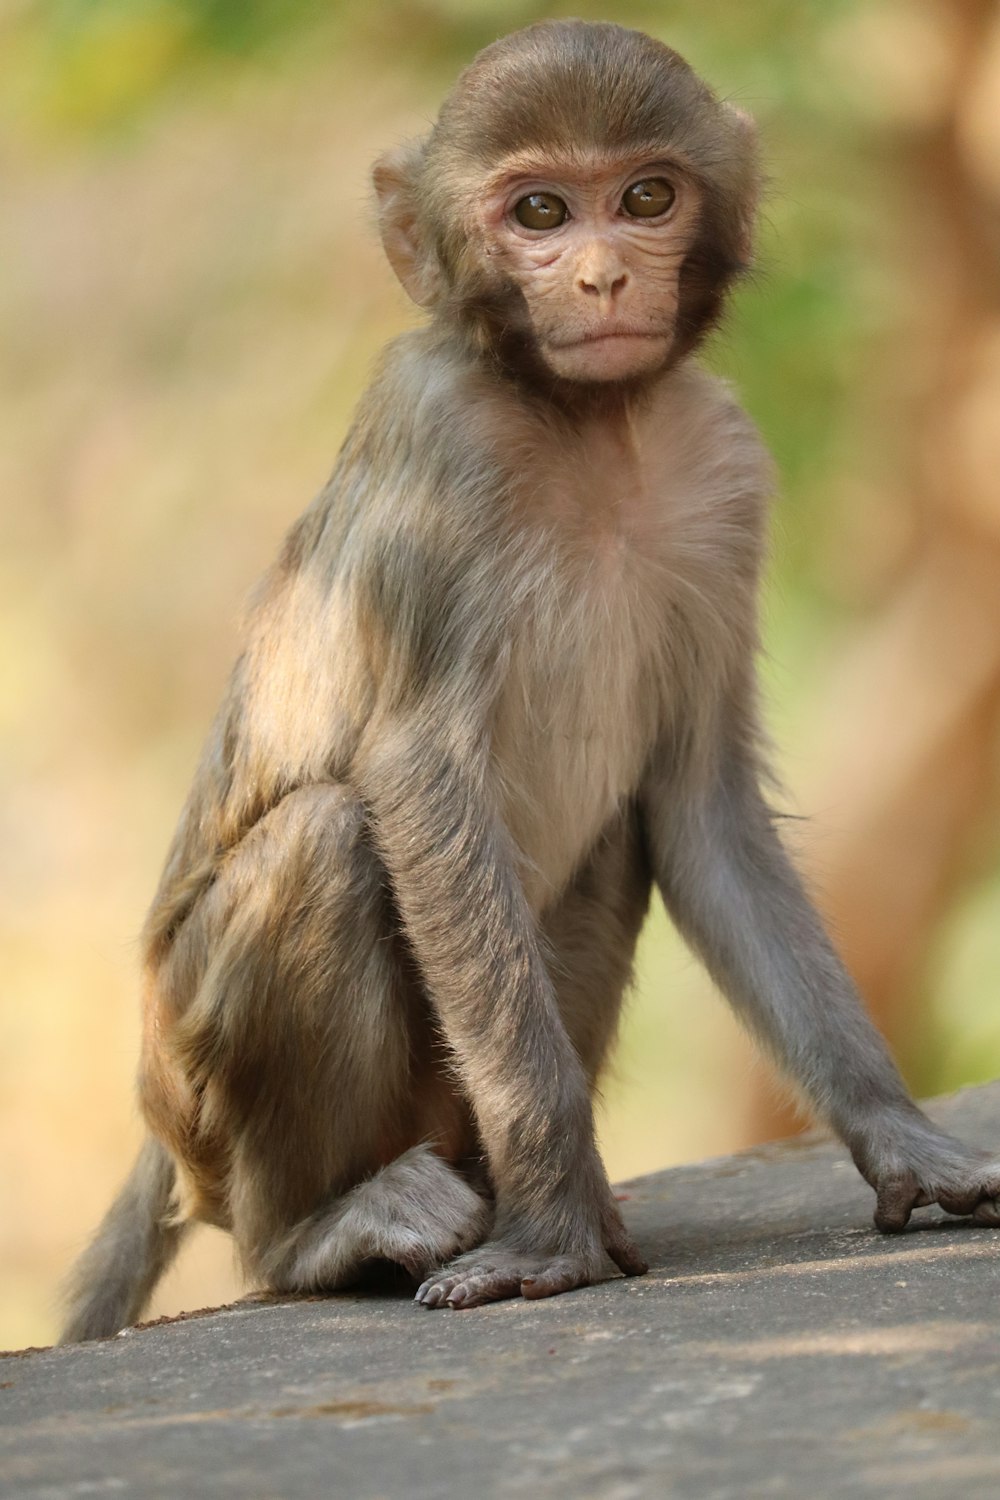 Macaco-aranha Sentado Numa Rocha, Que Fica Quieto Imagem de Stock